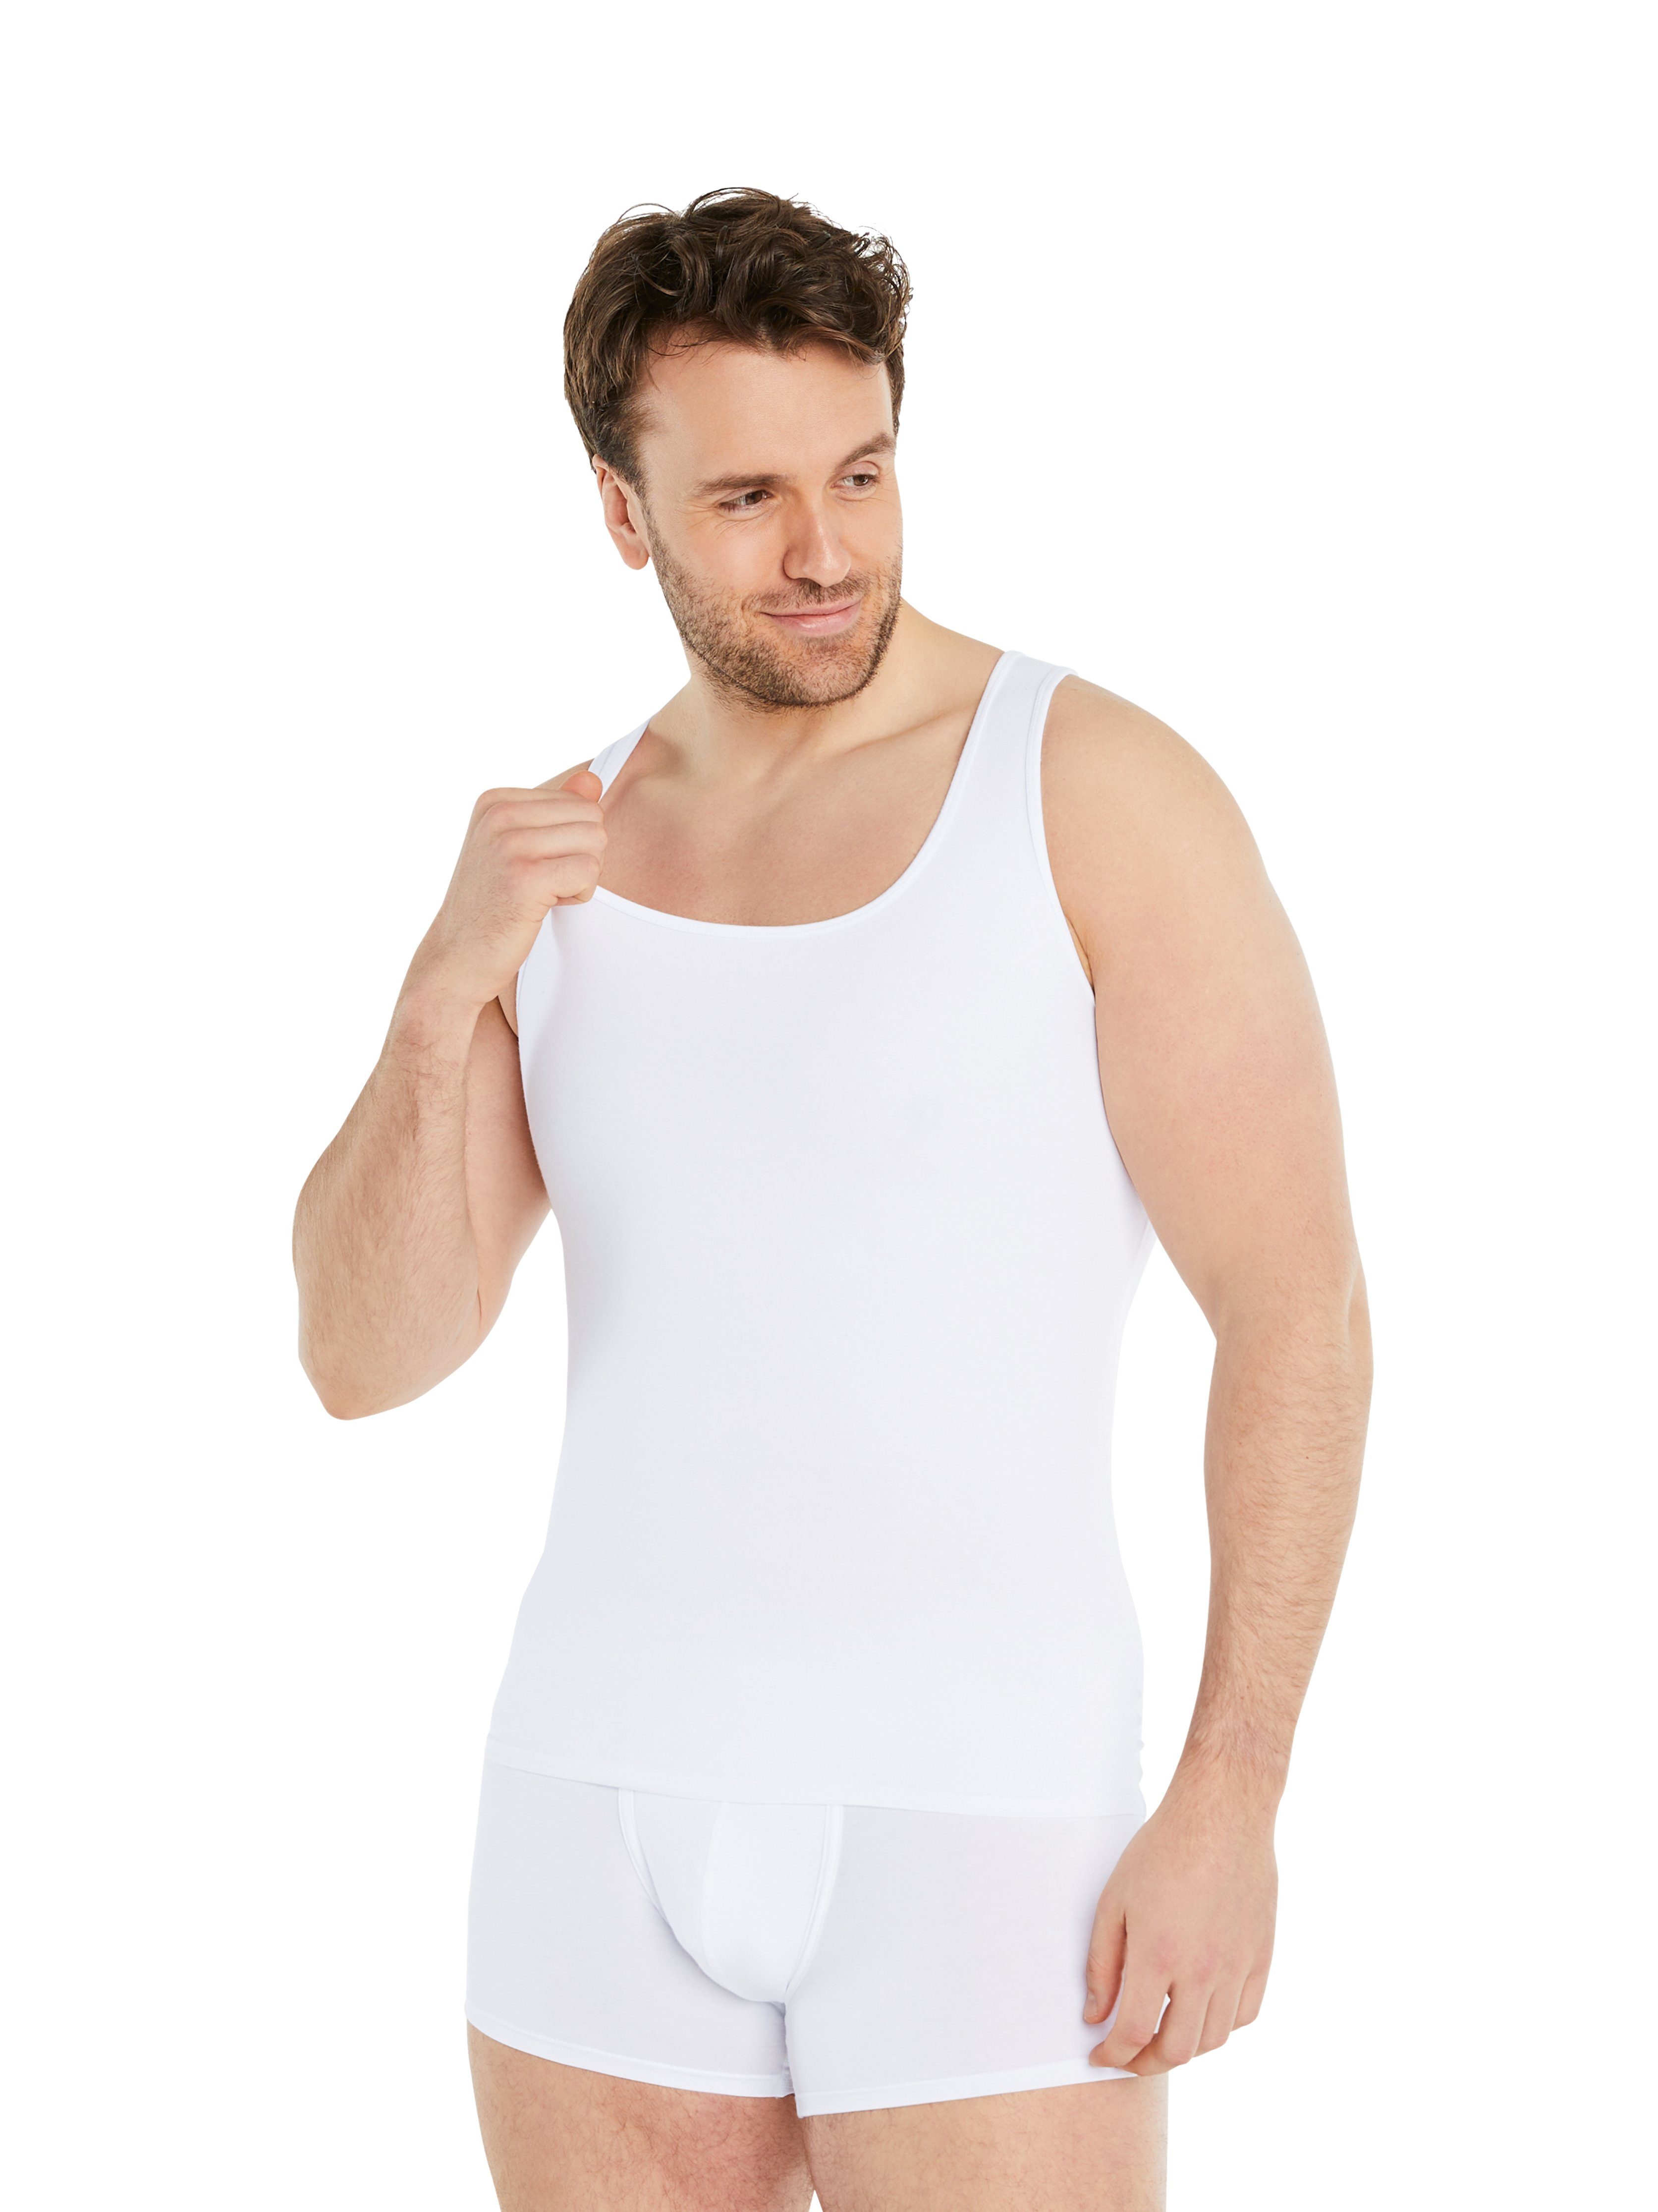 extra Shapinghemd Design Kompression, Ärmellos Kleidergröße eine Shapewear Kompressions-Unterhemd Weiß FINN Herren starke weniger